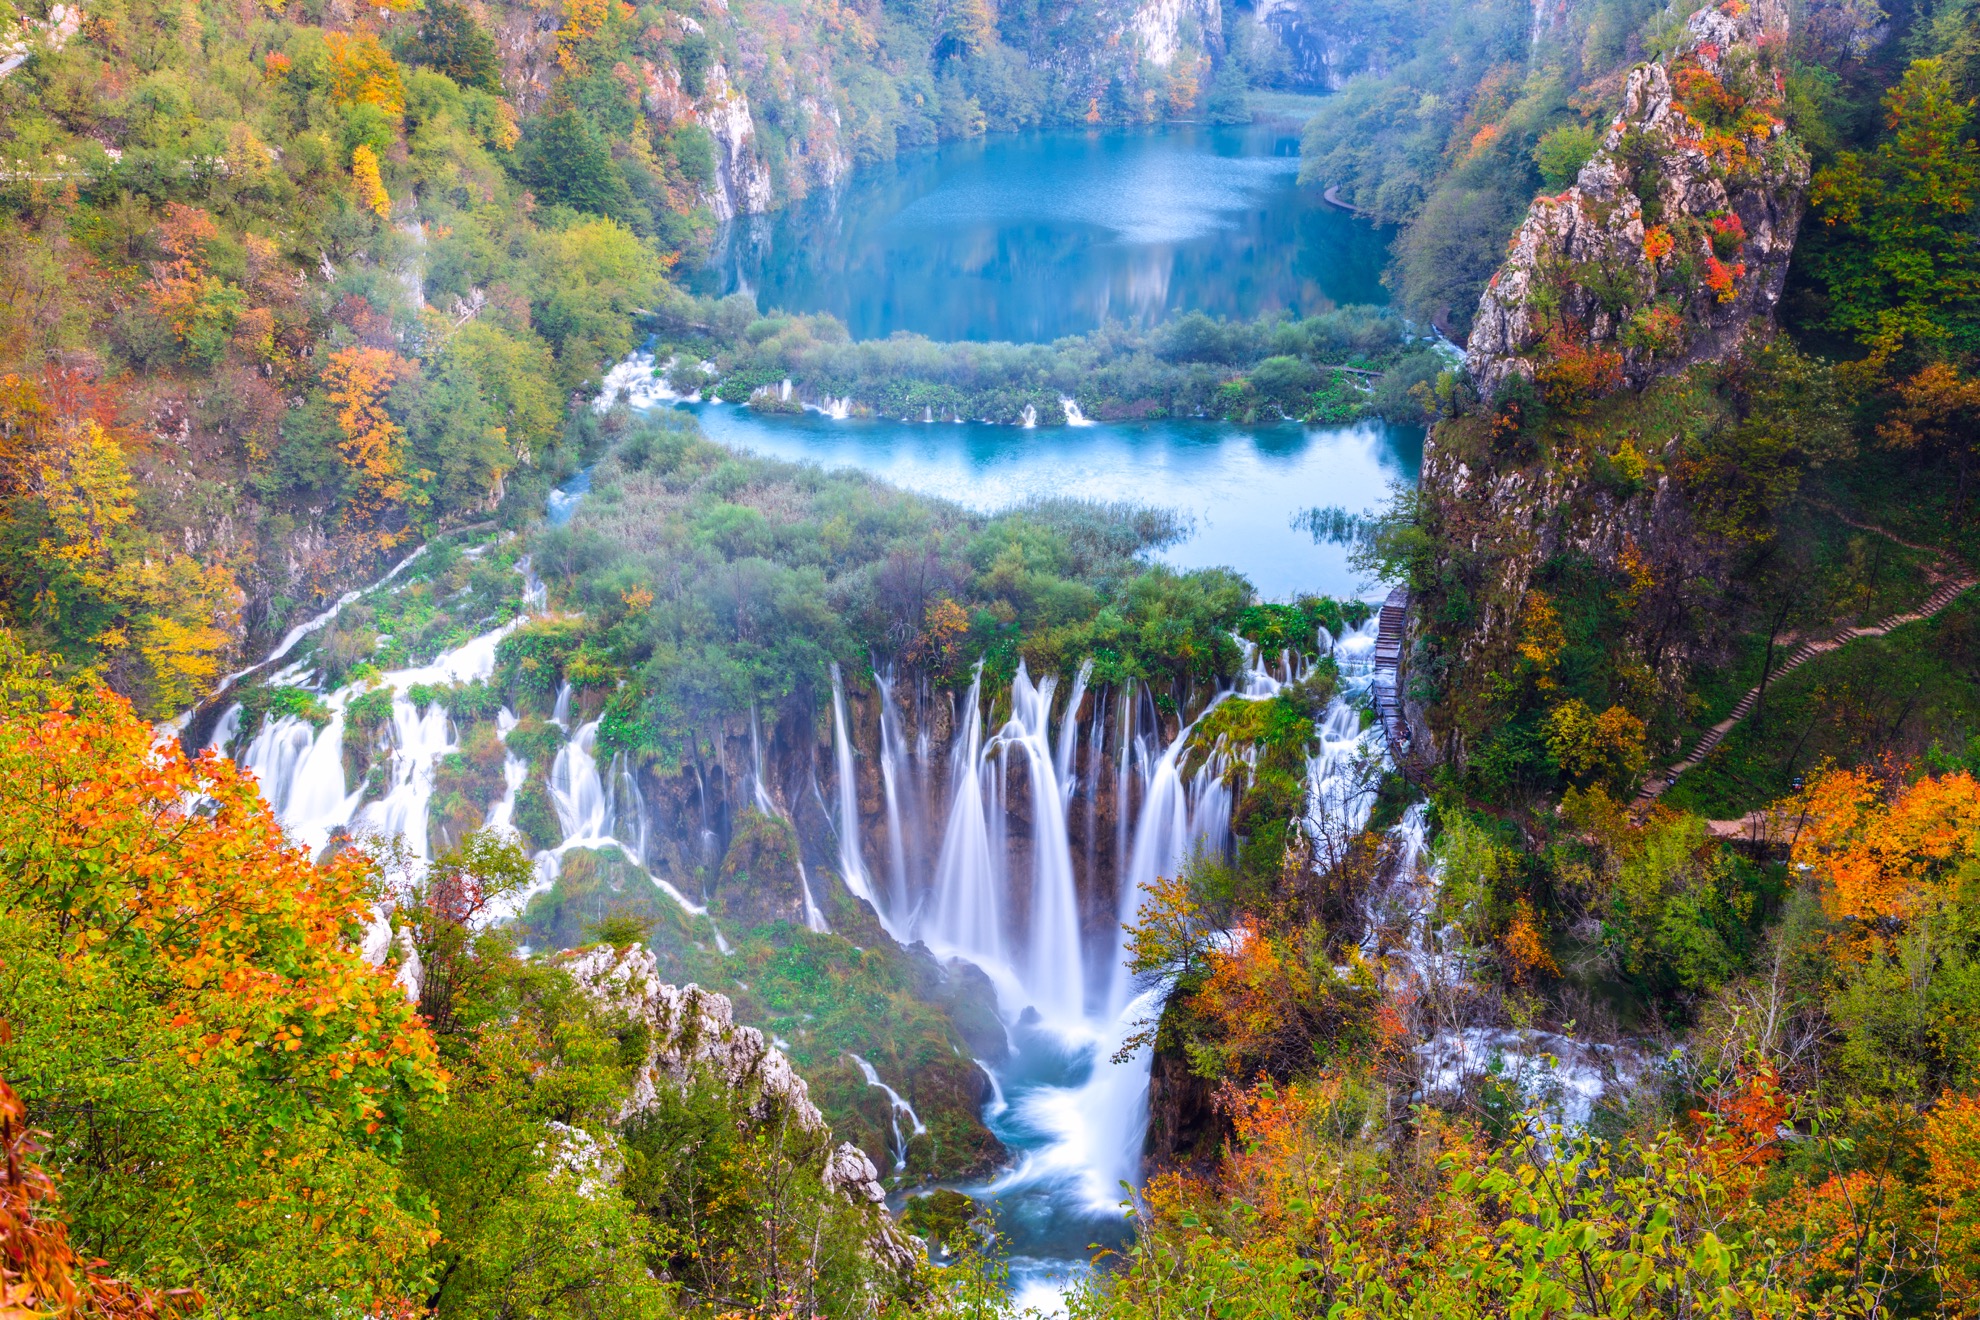 Cascadas se unen a 16 lagos naturales en el impresionante Parque Nacional Plitvice Lakes de Croacia